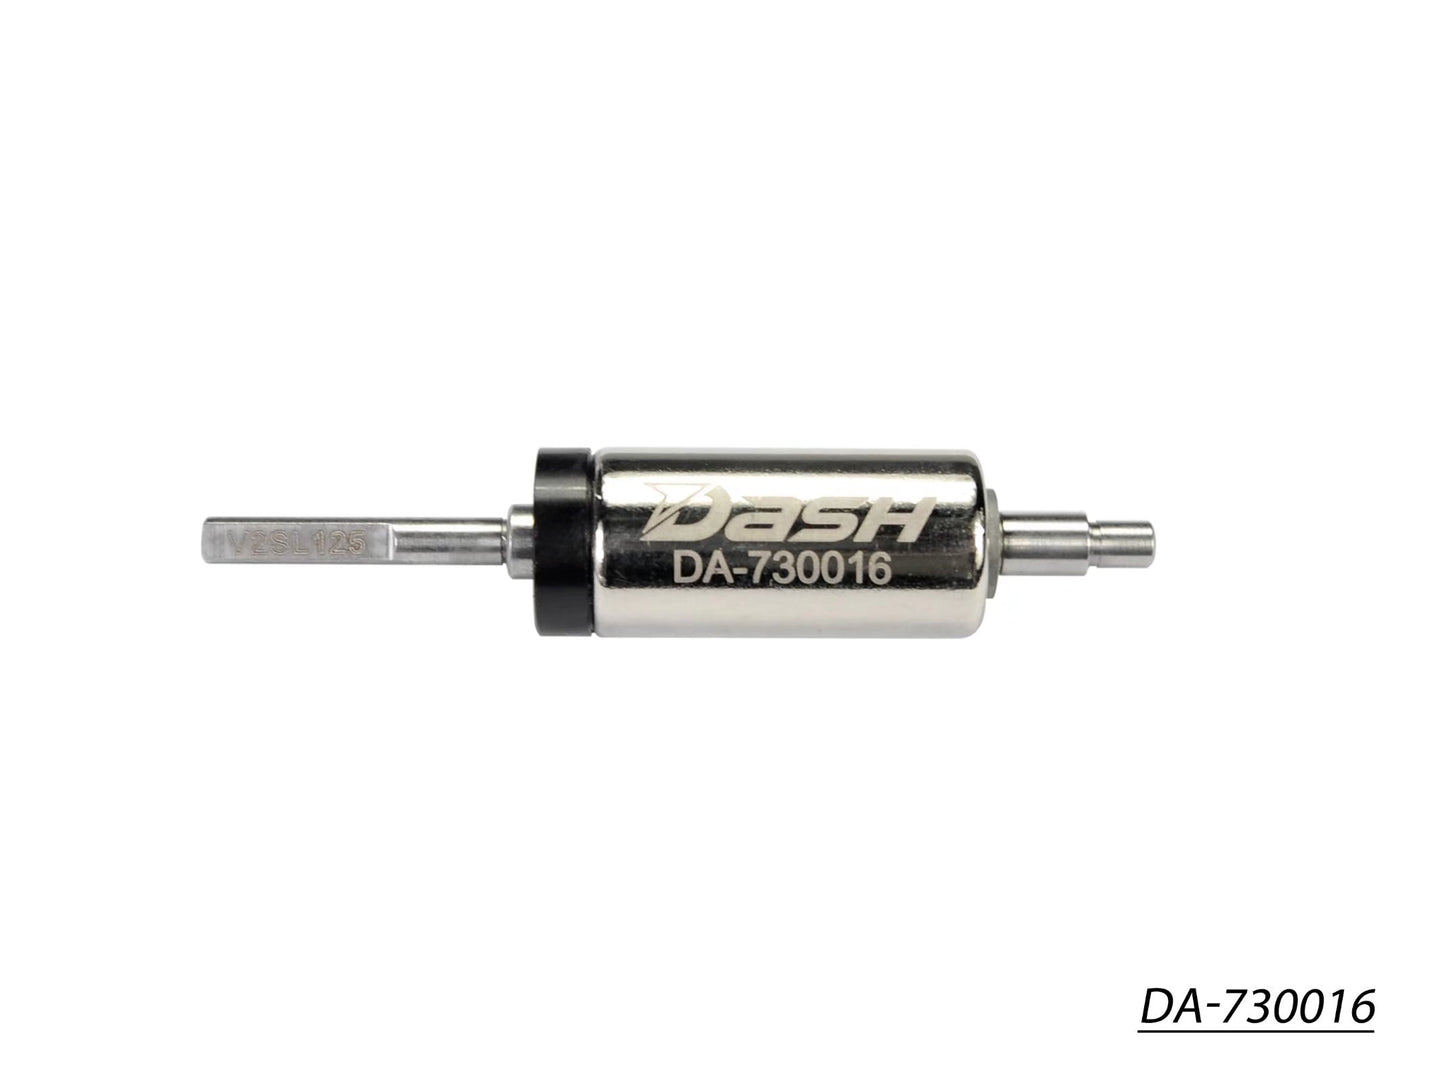 Dash S-Tune Rotor 7.2-12.5- 25.3 (V2SL125) DA-730016